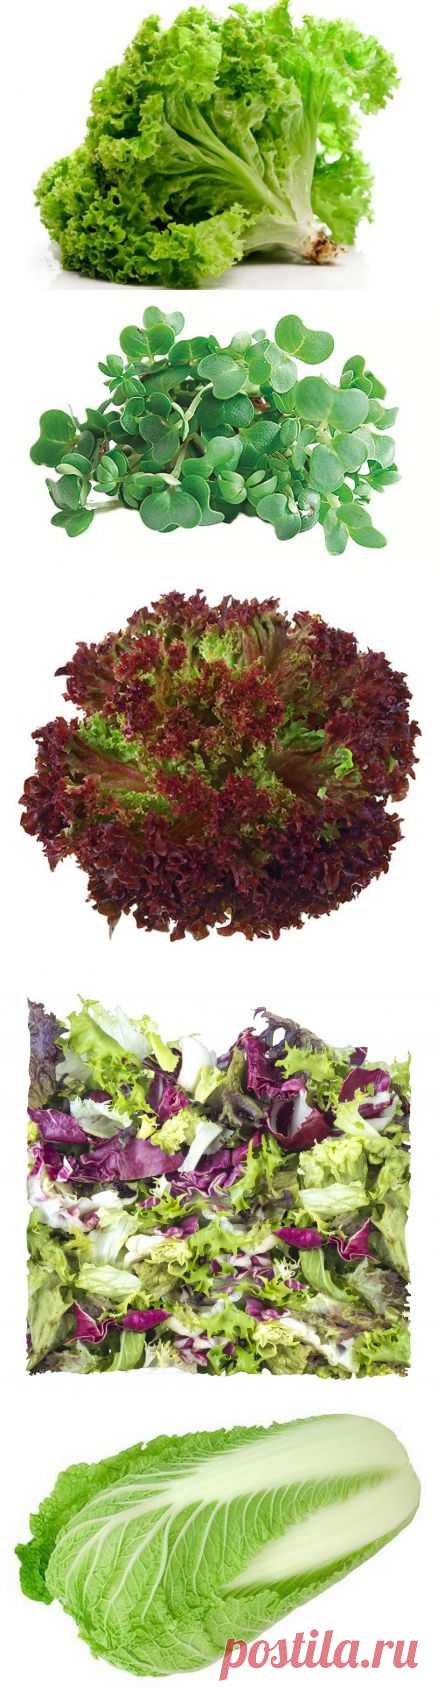 Разновидности зеленых салатов. О вкусе и сочетаниях с другими продуктами | Пузо2арбуза